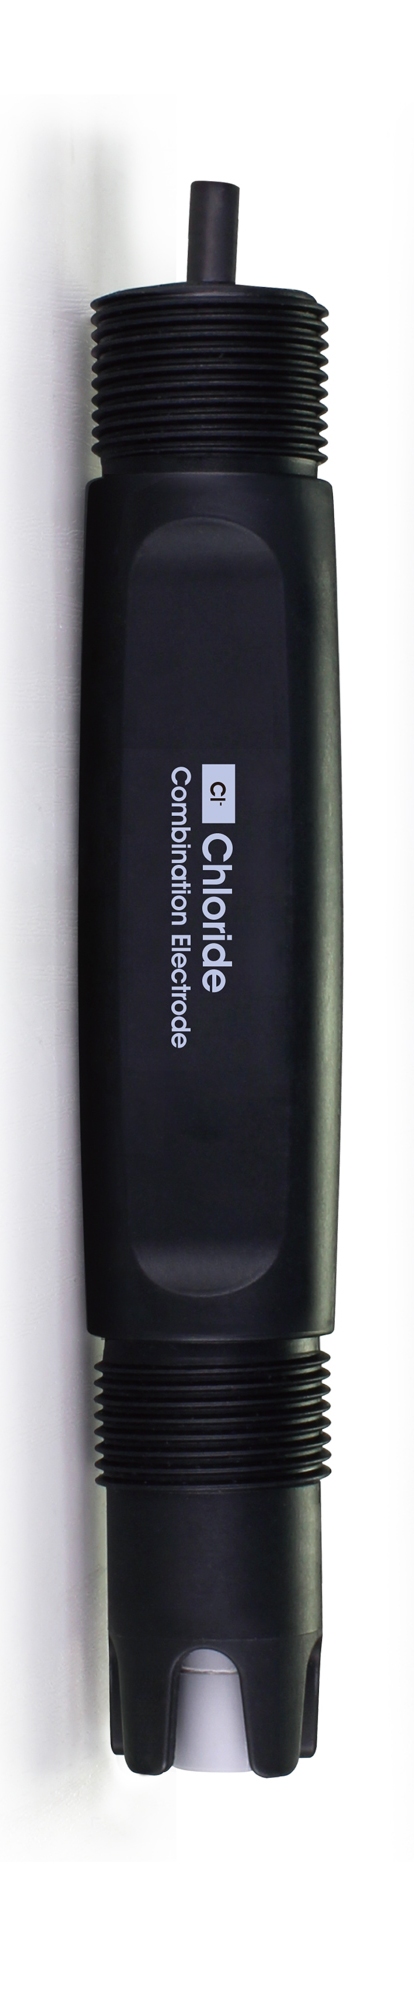 CS6710Cl A Chloride Ion Selective Electrode sensor